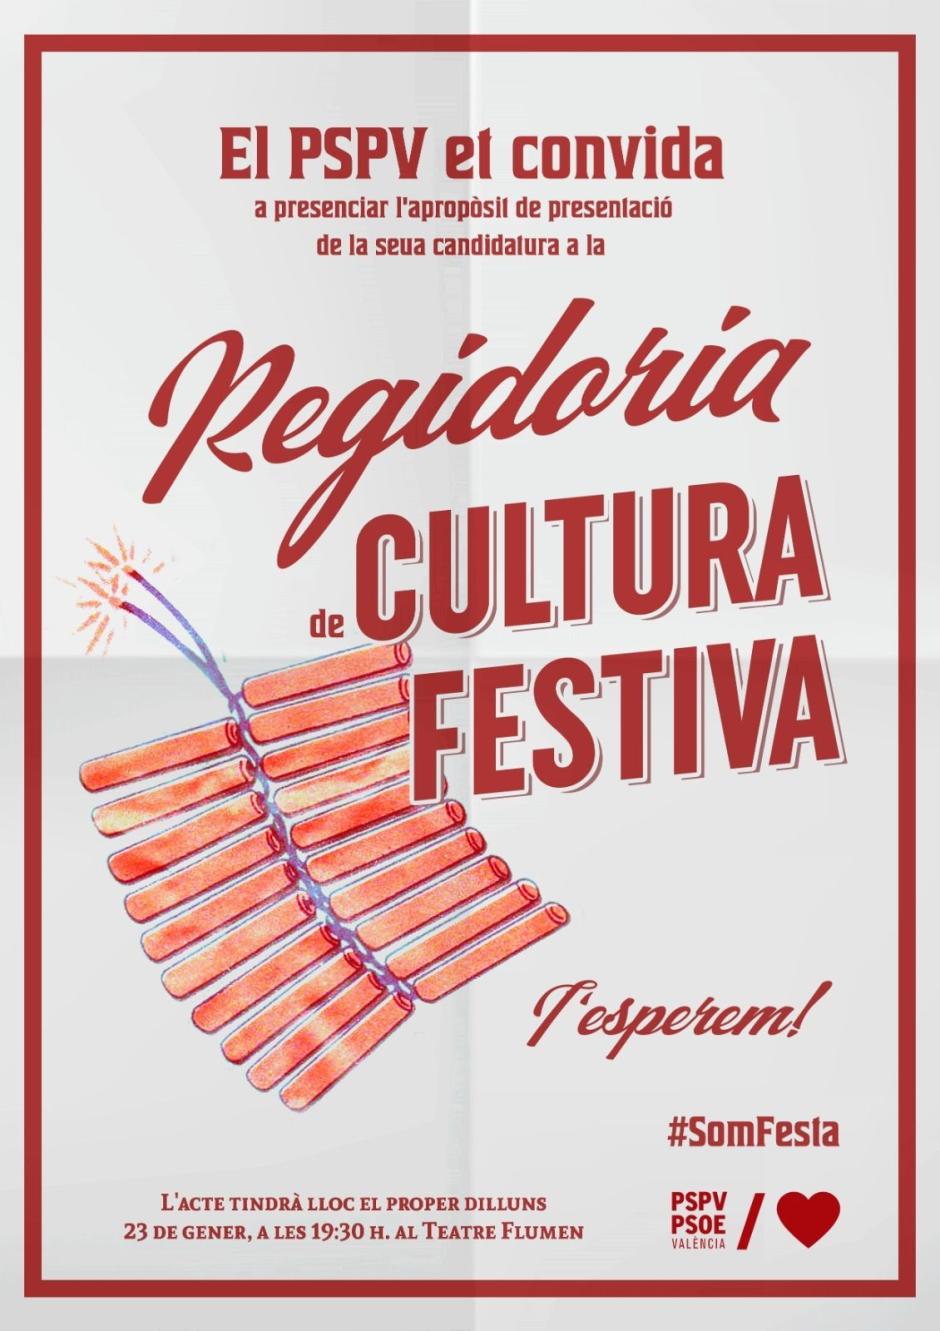 Cartel del PSPV-PSOE anunciando el acto para la Concejalía de Cultura Festiva.